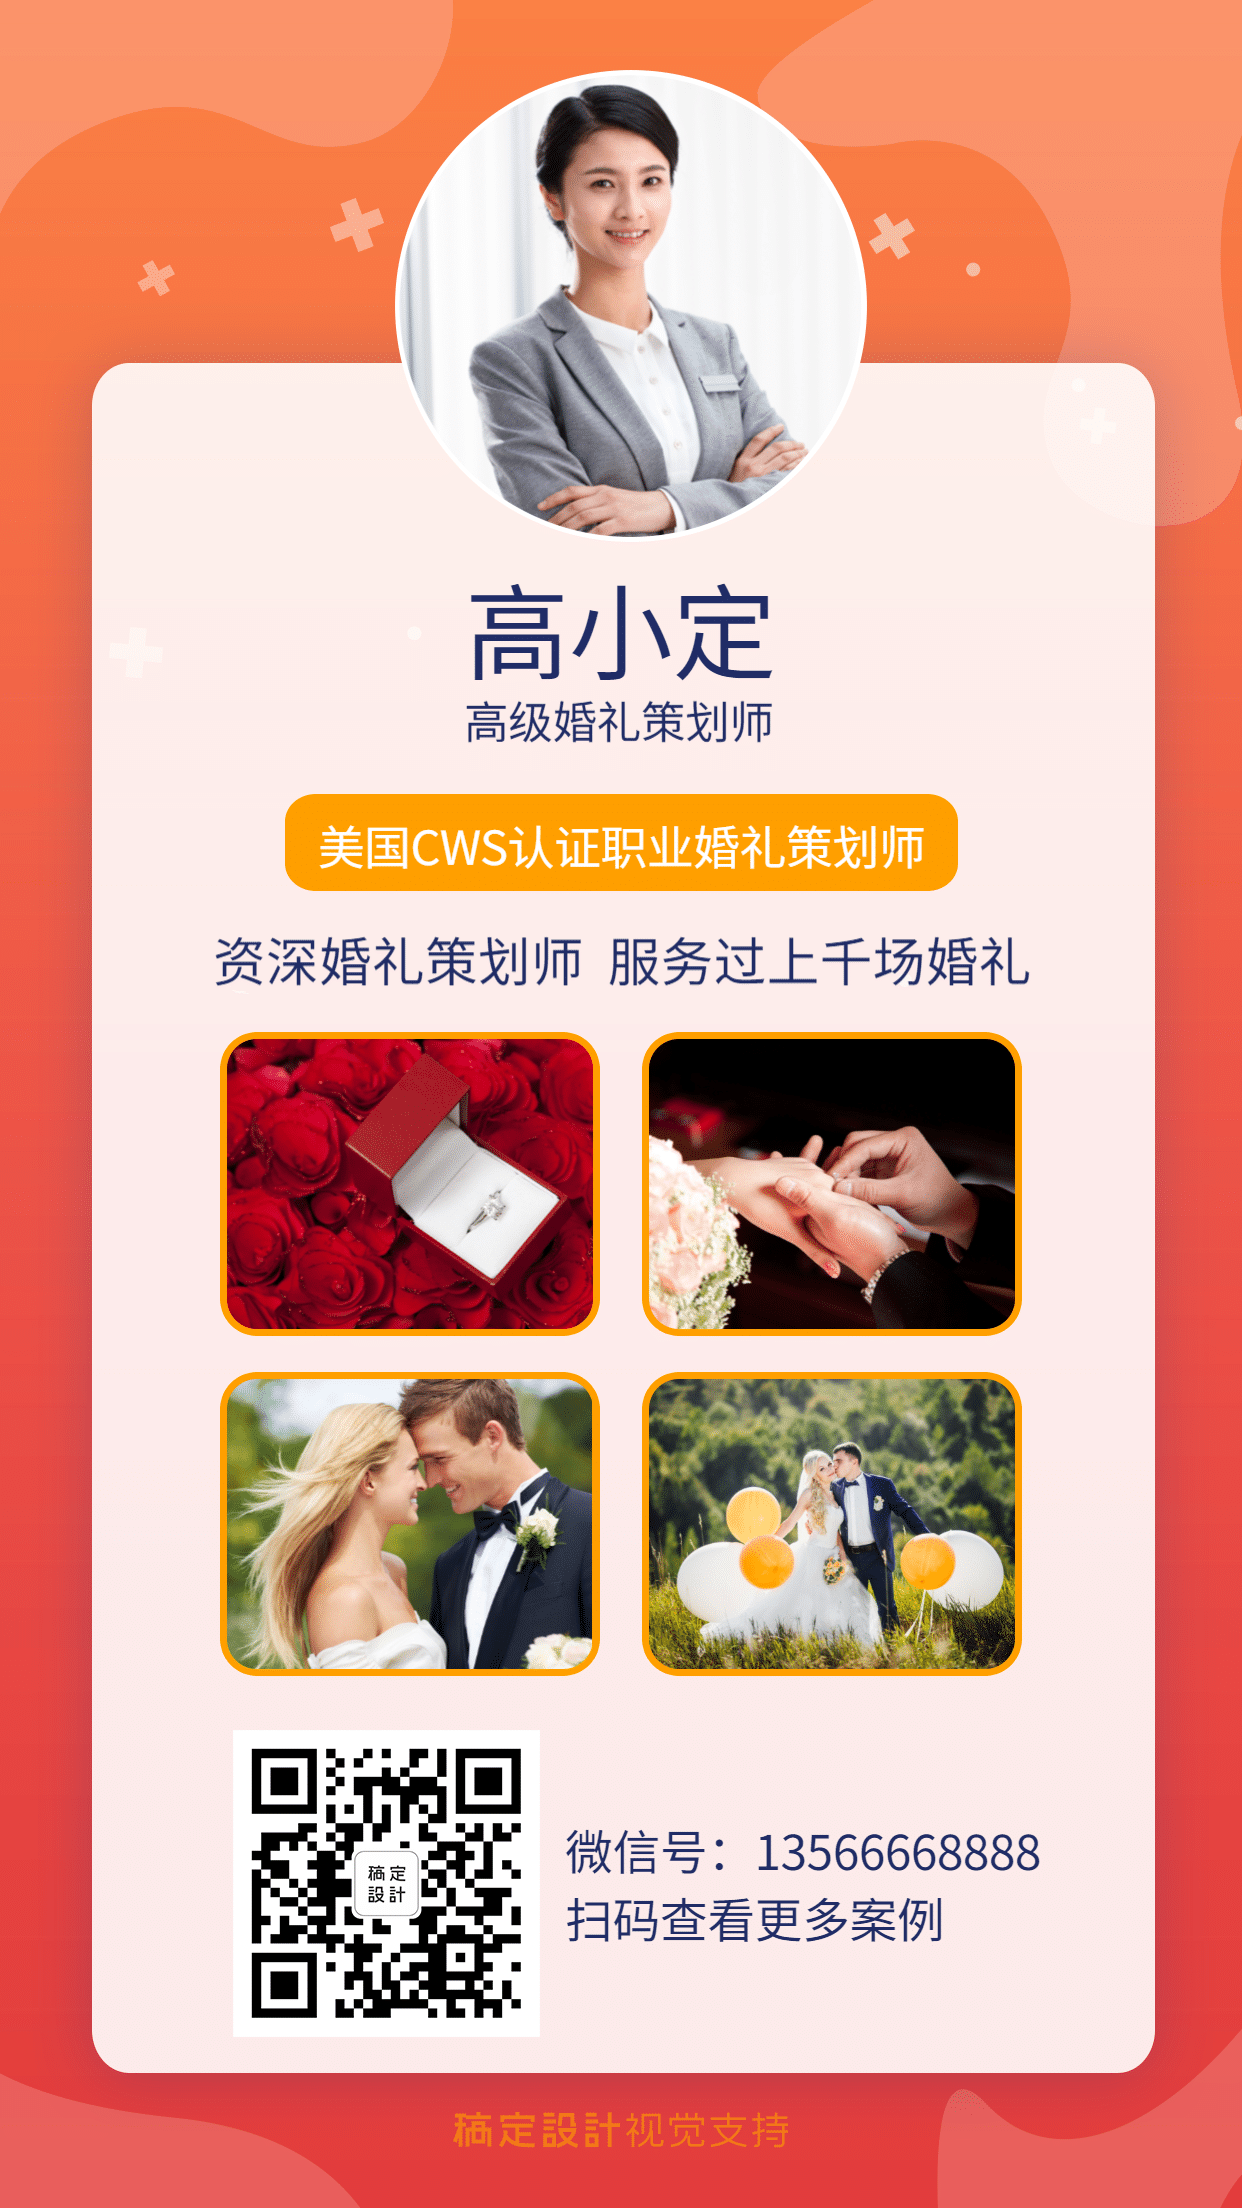 高级婚礼策划师社交名片作品展示